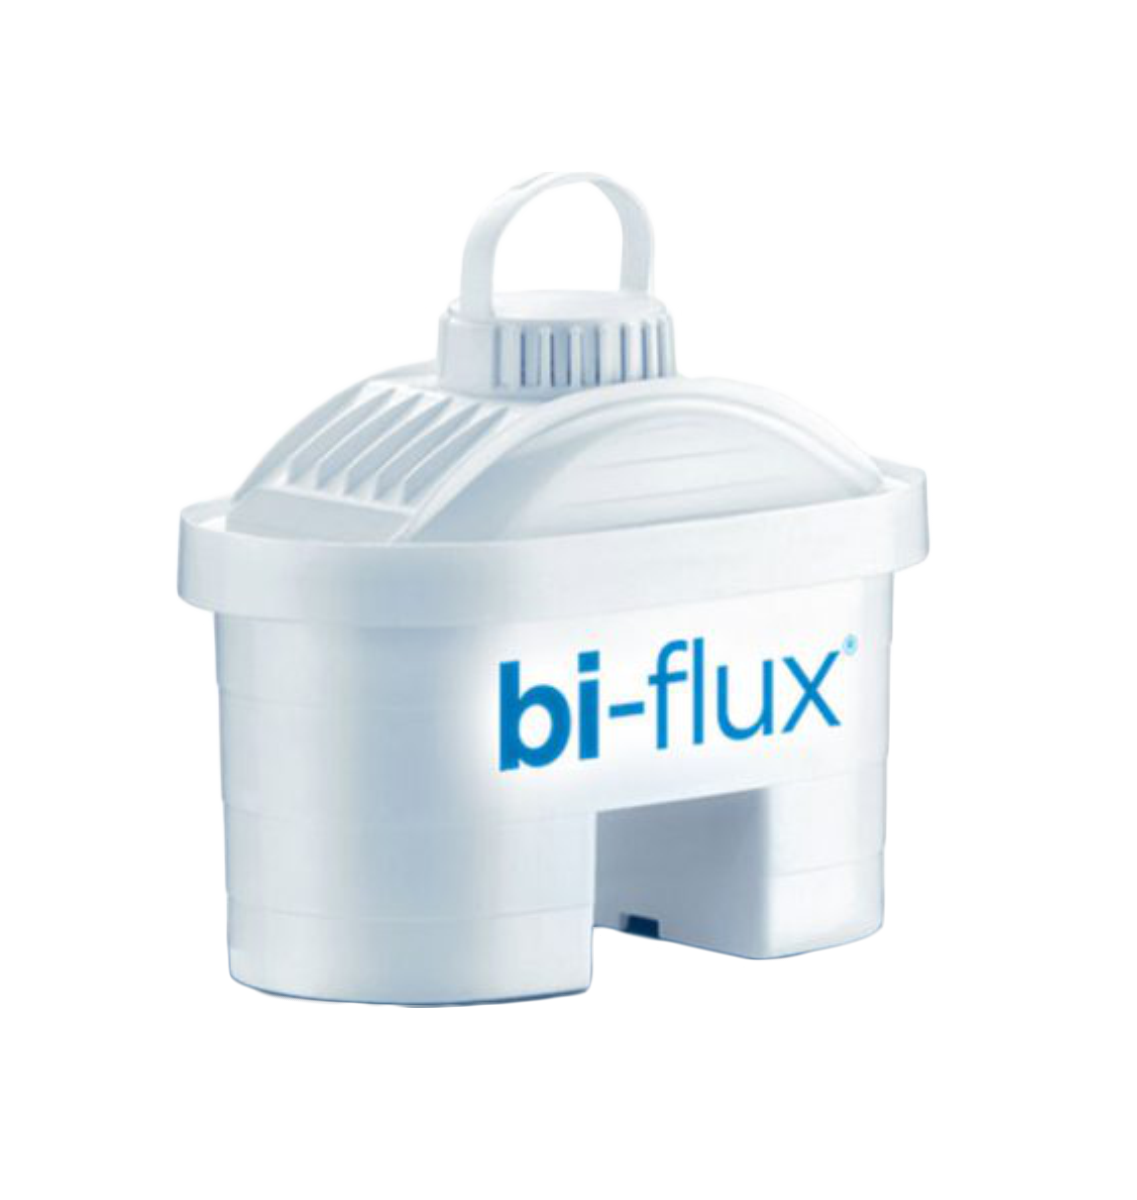 Filter za bokal za filtriranje pijaće vode Bi-Flux